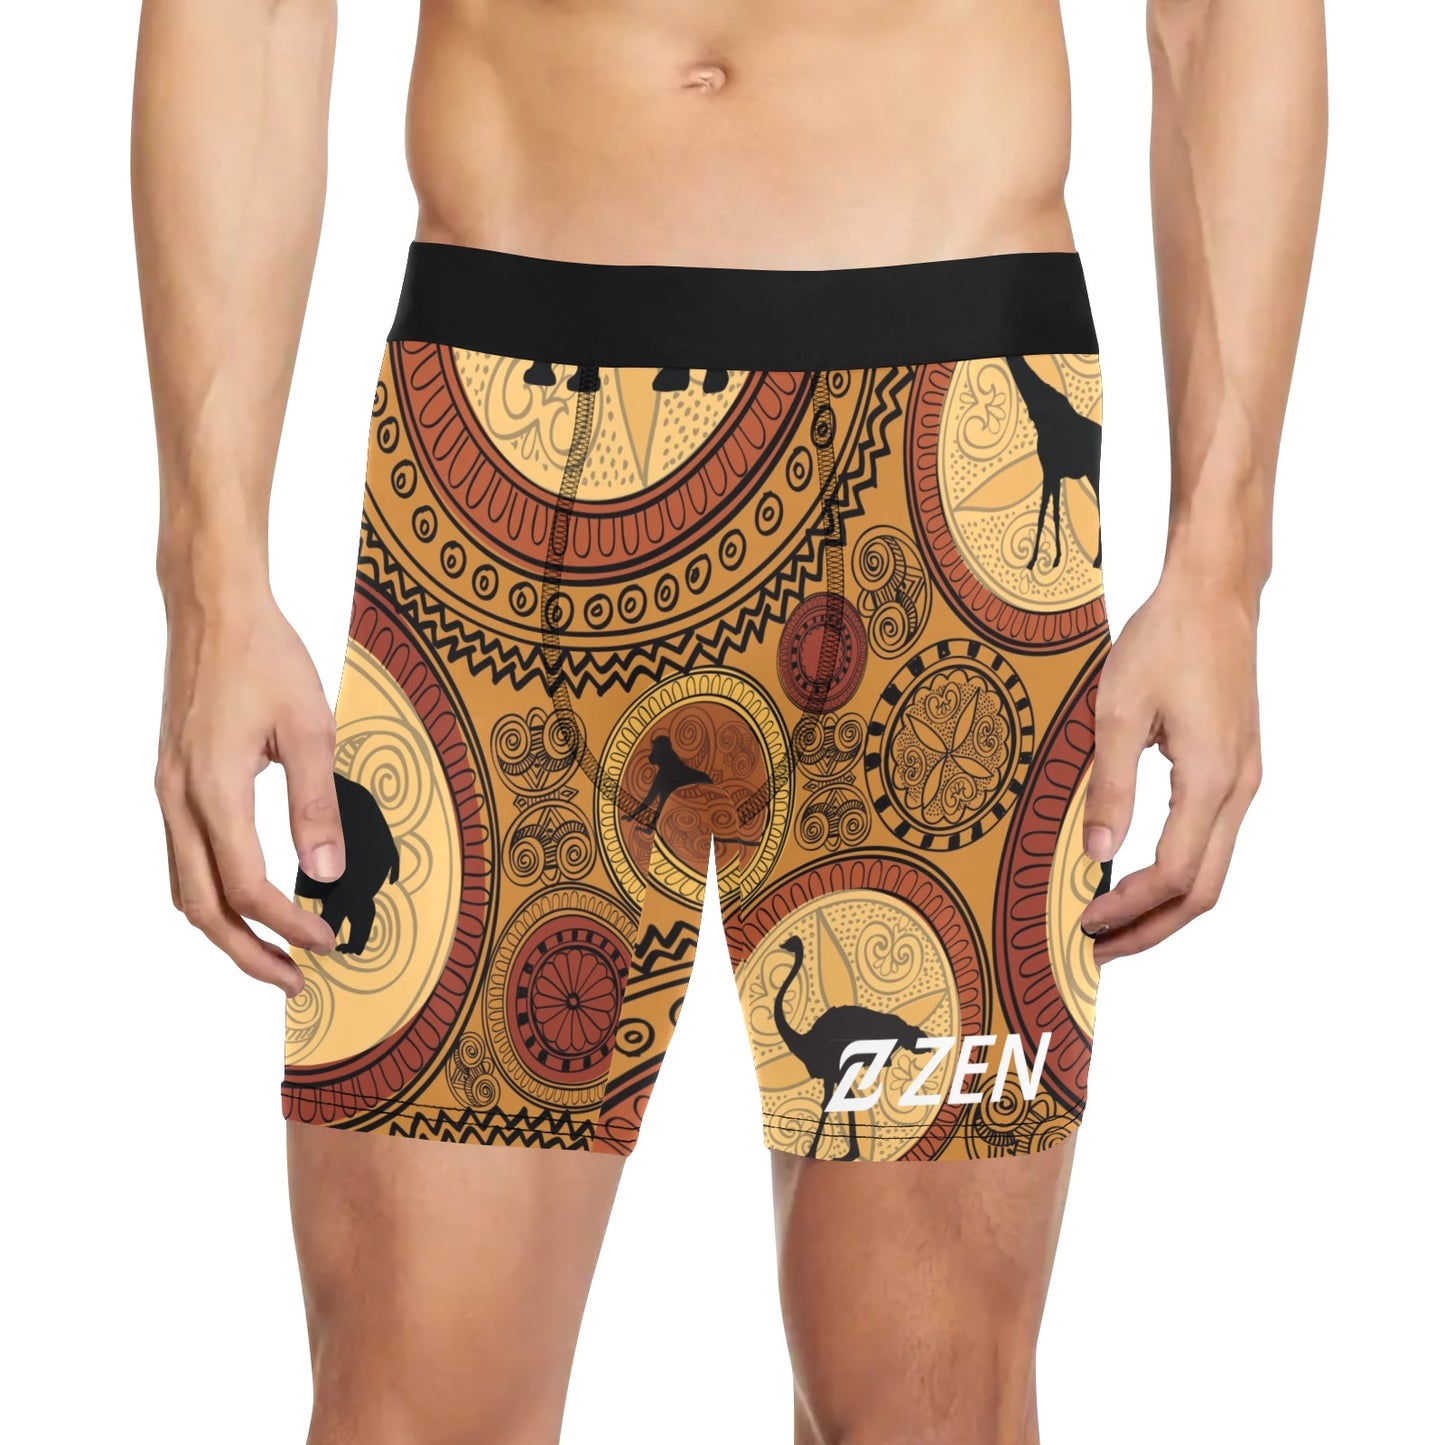 Zen Boxers Long -Amazon